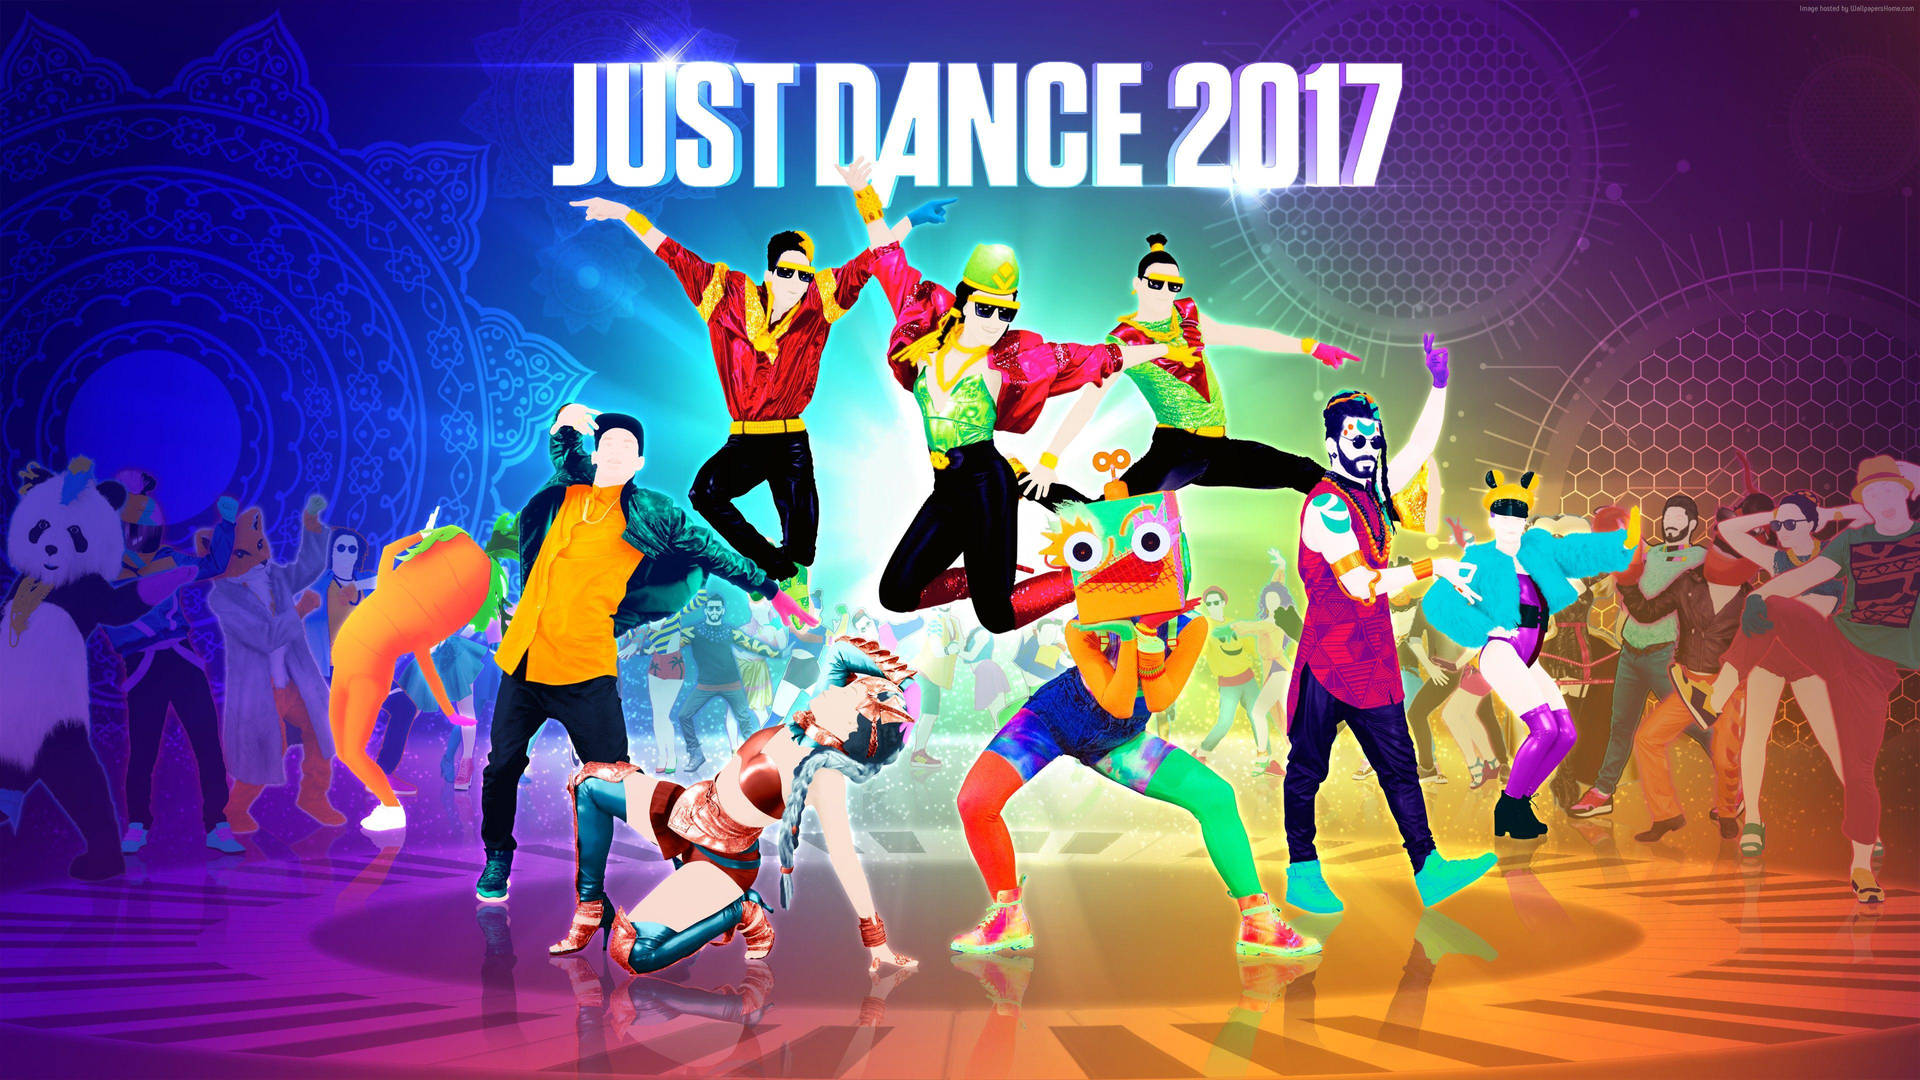 Tänzervon Just Dance 2017 Auf Dem Klavierboden. Wallpaper